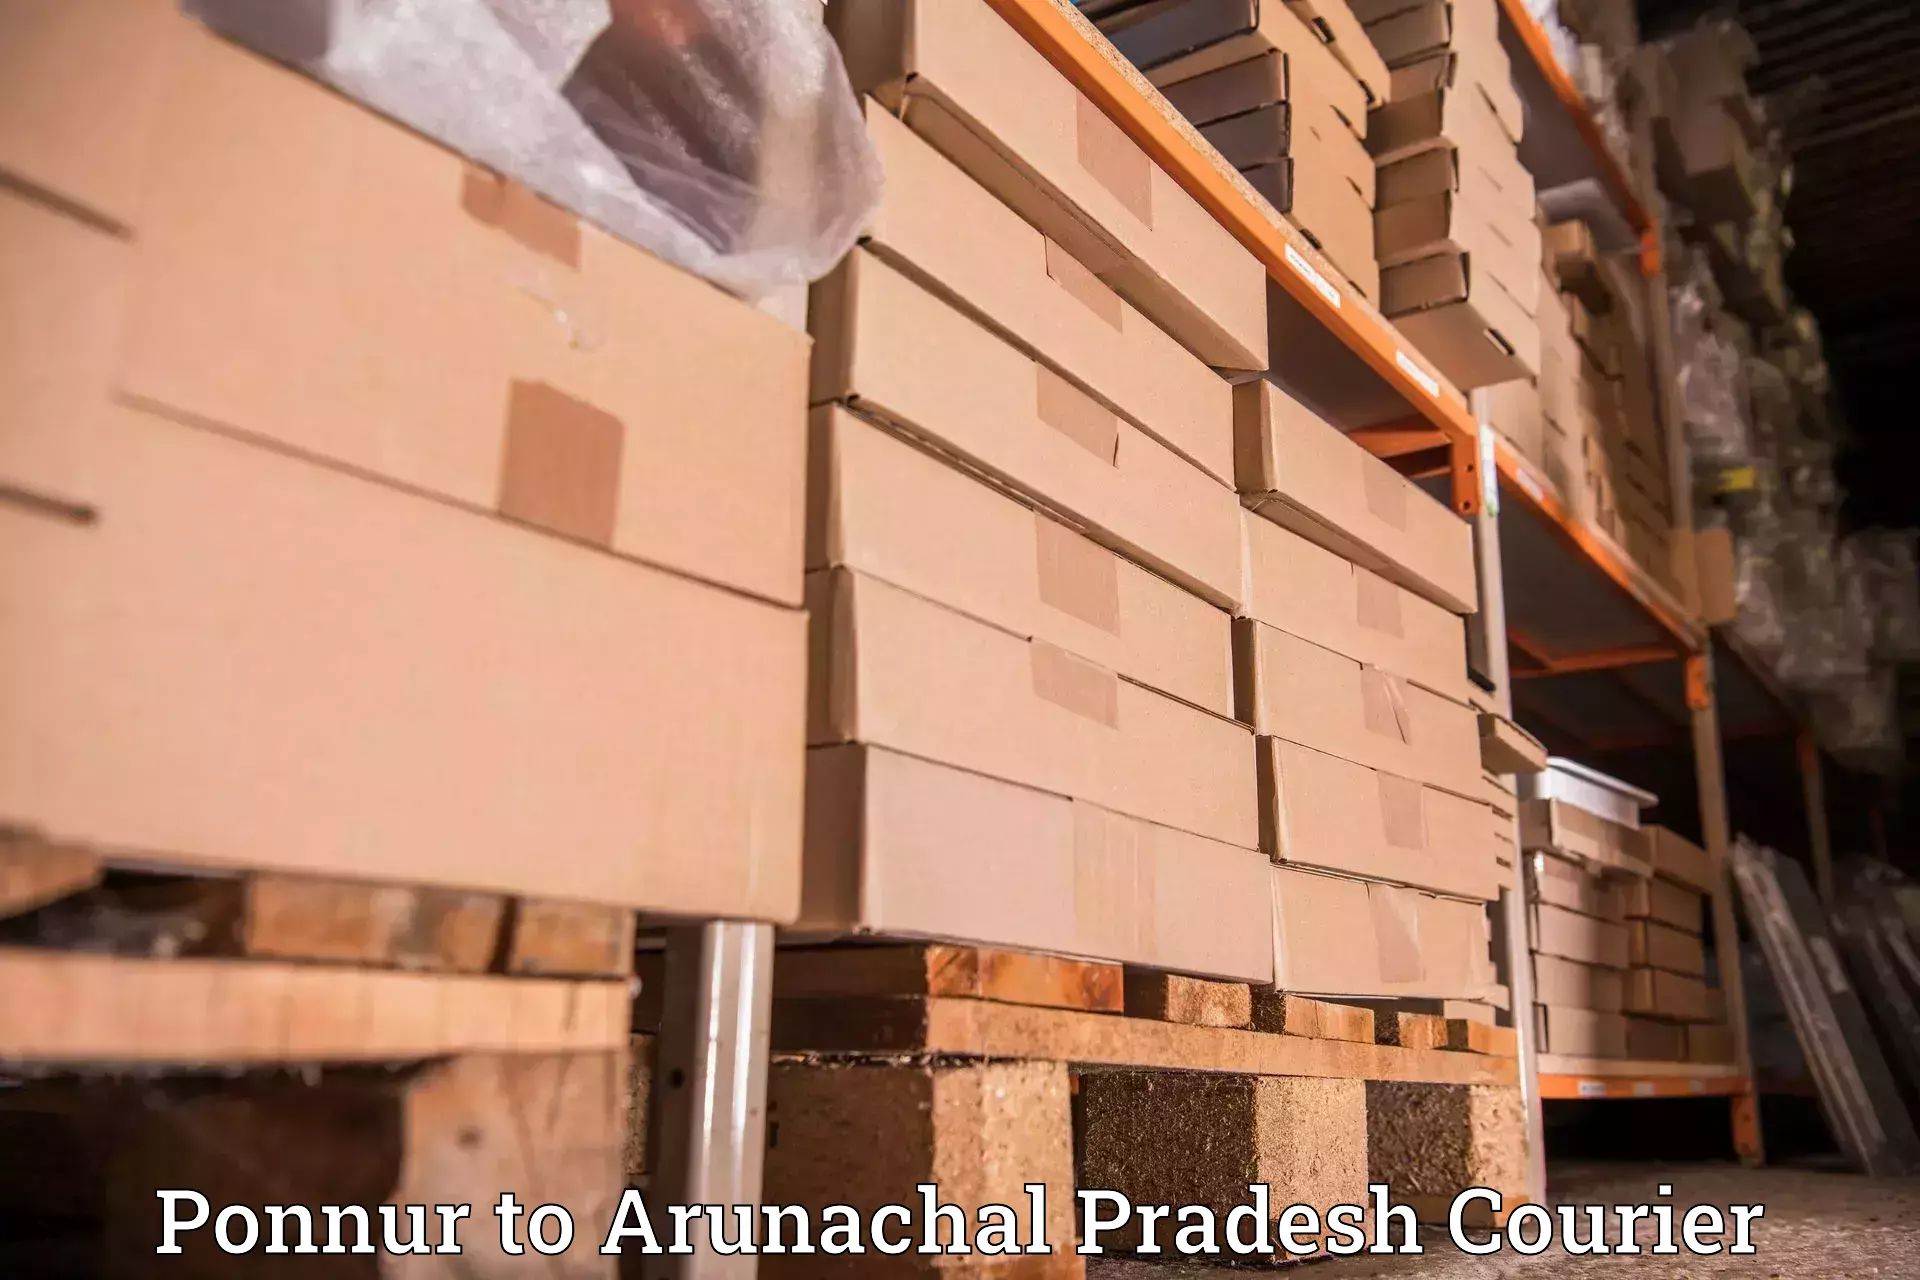 International courier rates Ponnur to Arunachal Pradesh